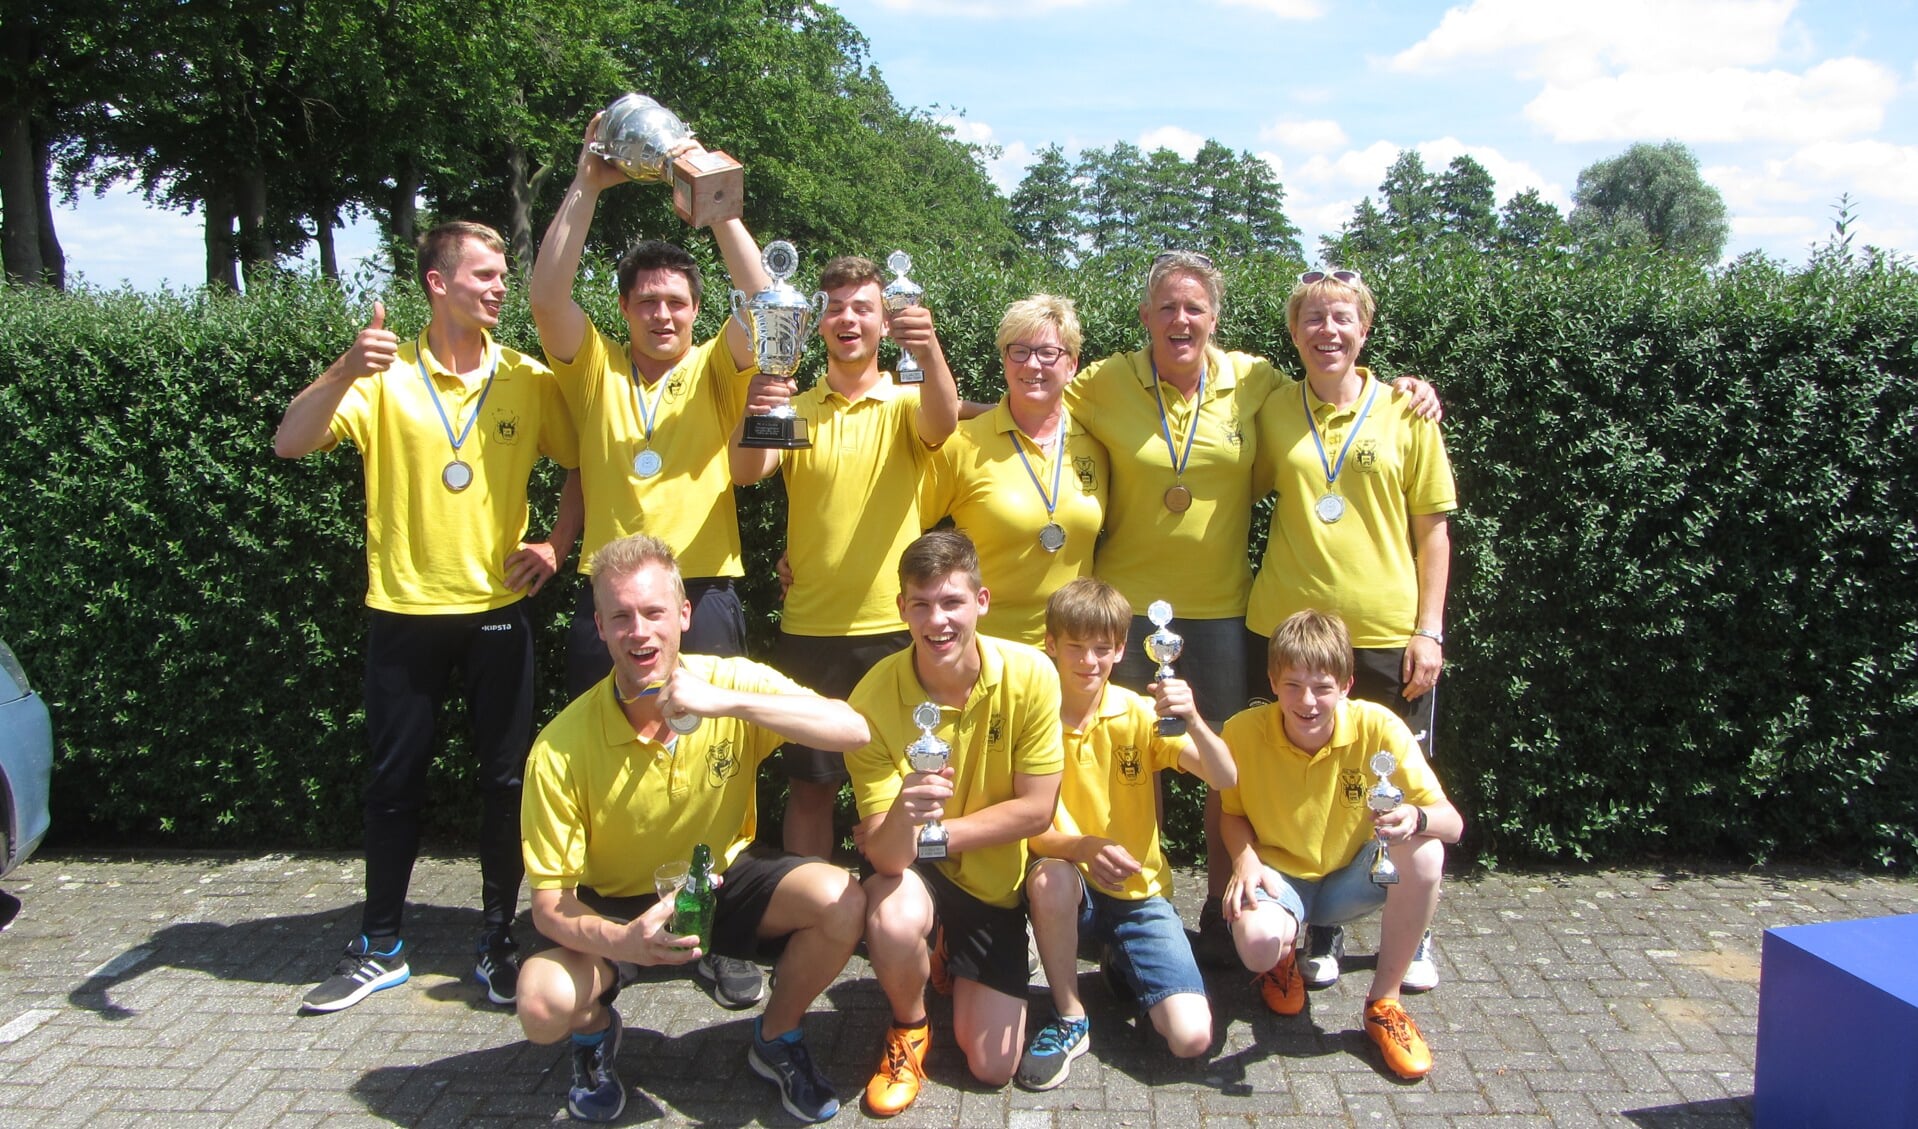 De kampioenen van Klootschietvereniging Zwolle. Foto: PR